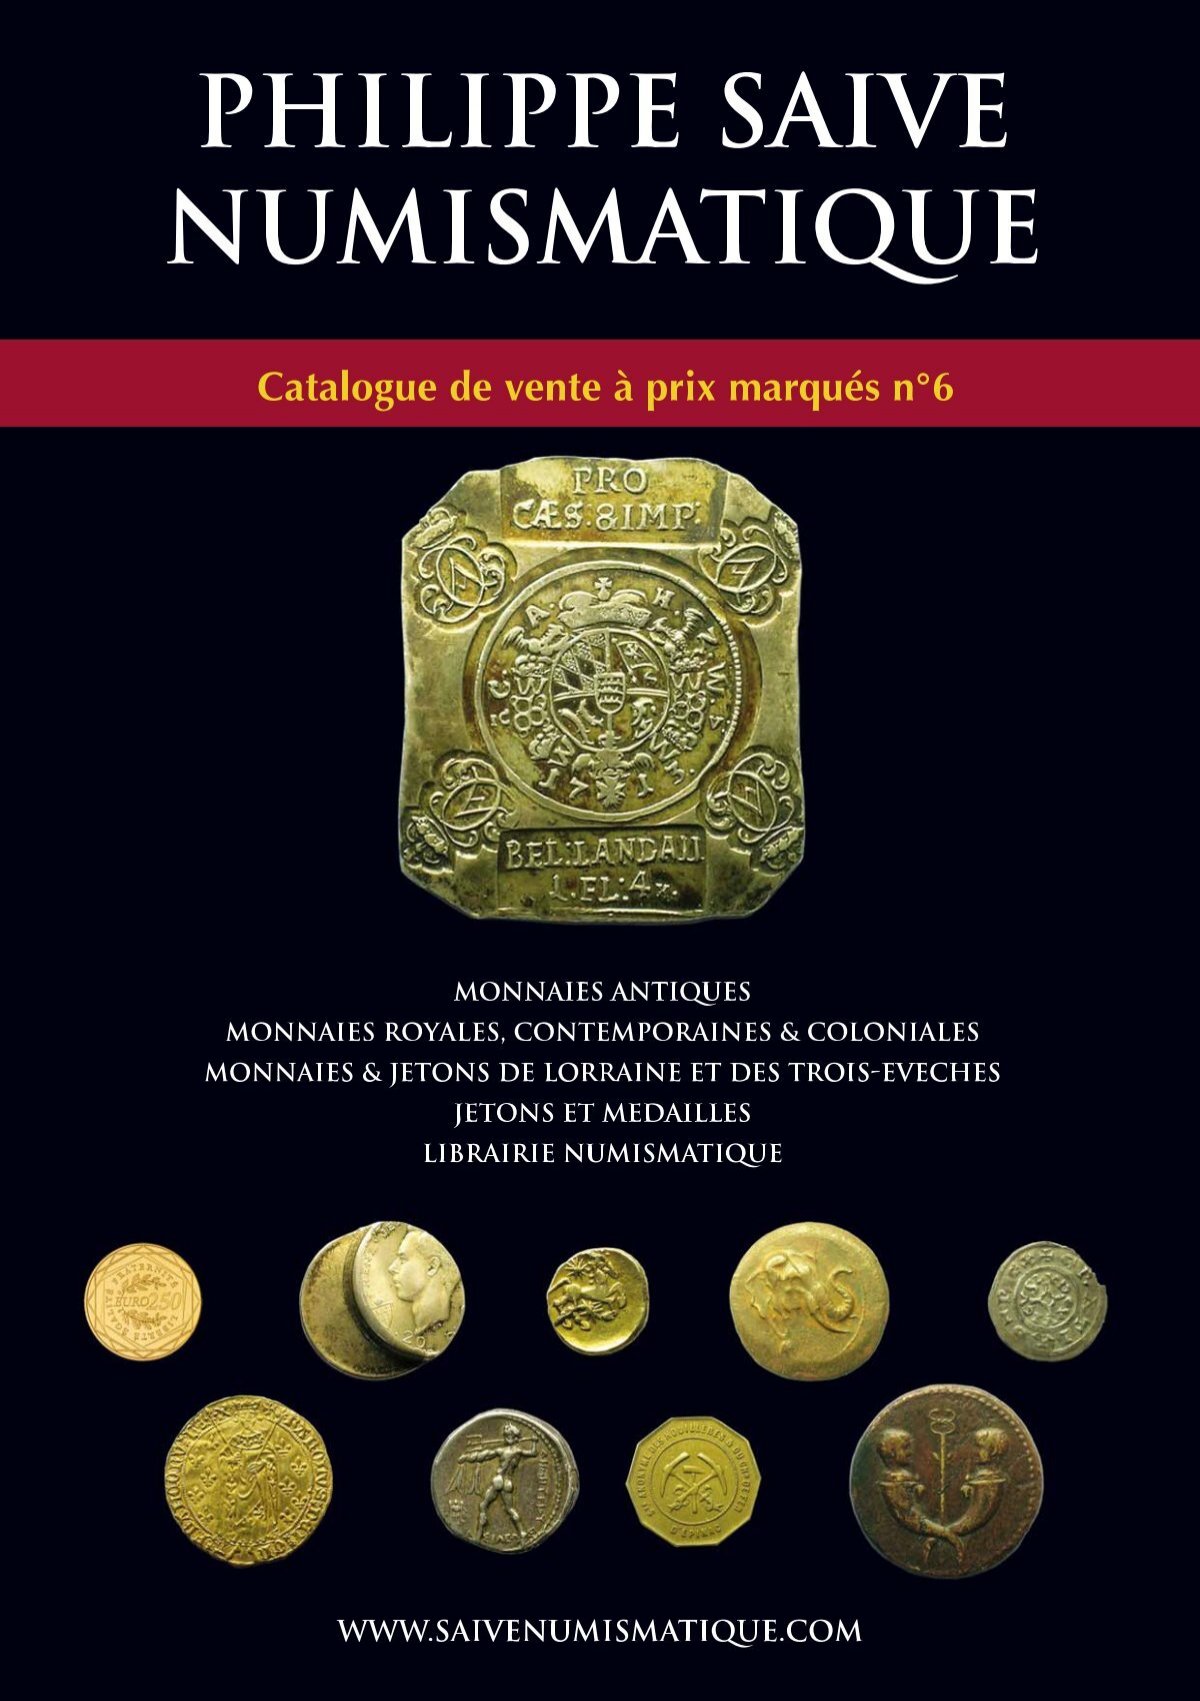 Librairie MONNAIES  Grand choix de catalogues numismatique